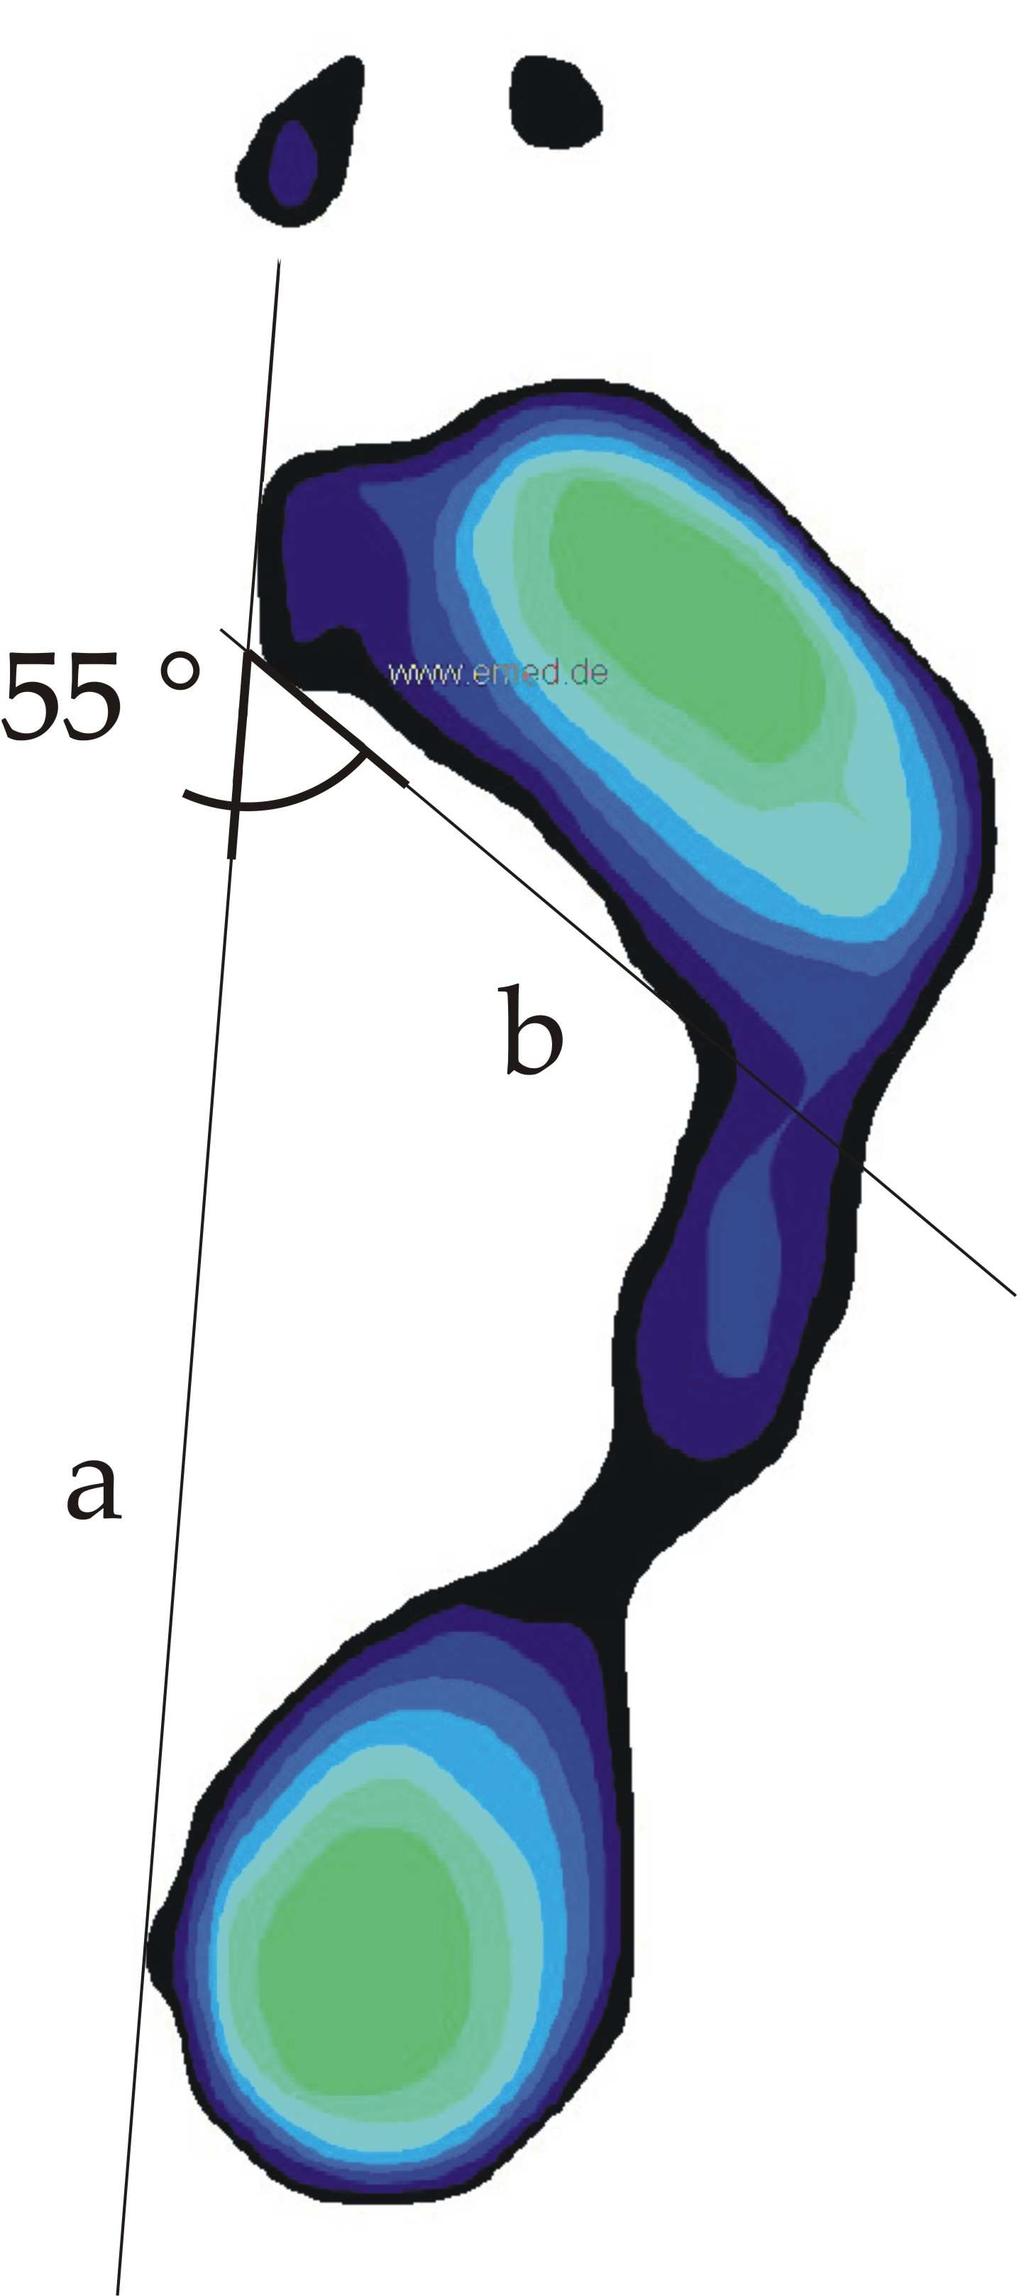 prostudovat obrázek, kde je noha zobrazená na plantogramu definována jako normální (viz obr. 19). Škála pro normální nohu je od 45 do 55 [19]. Obr.